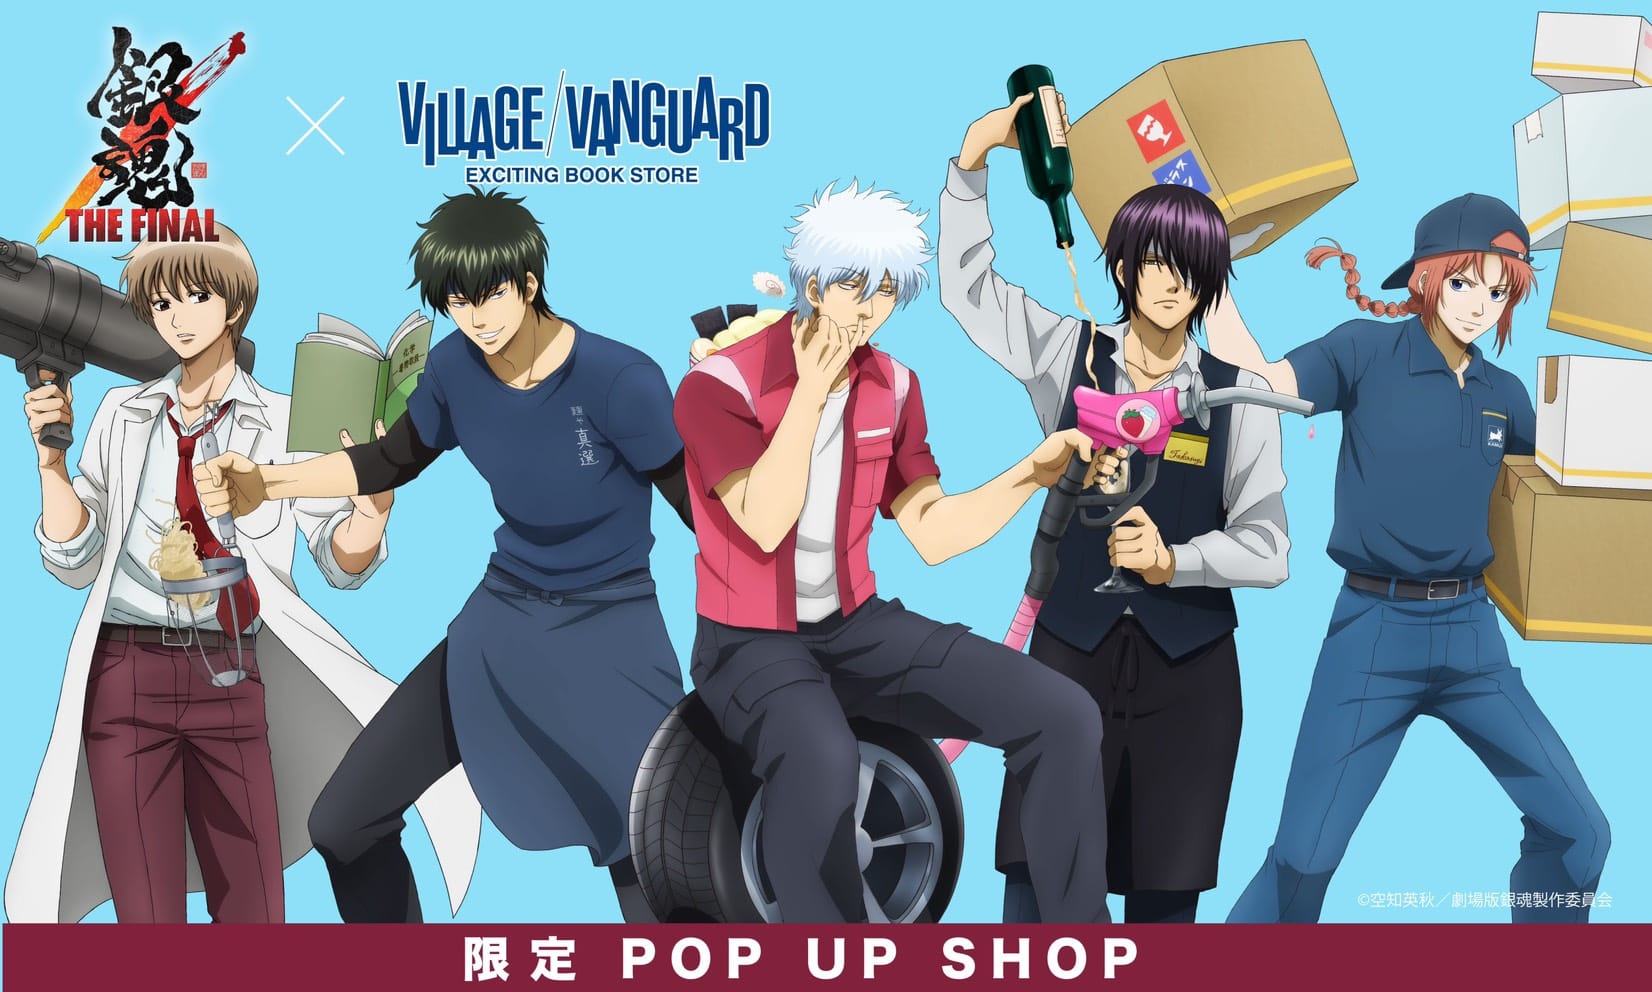 銀魂×ヴィレッジヴァンガード期間限定POP UP SHOP開催とオンライン通販